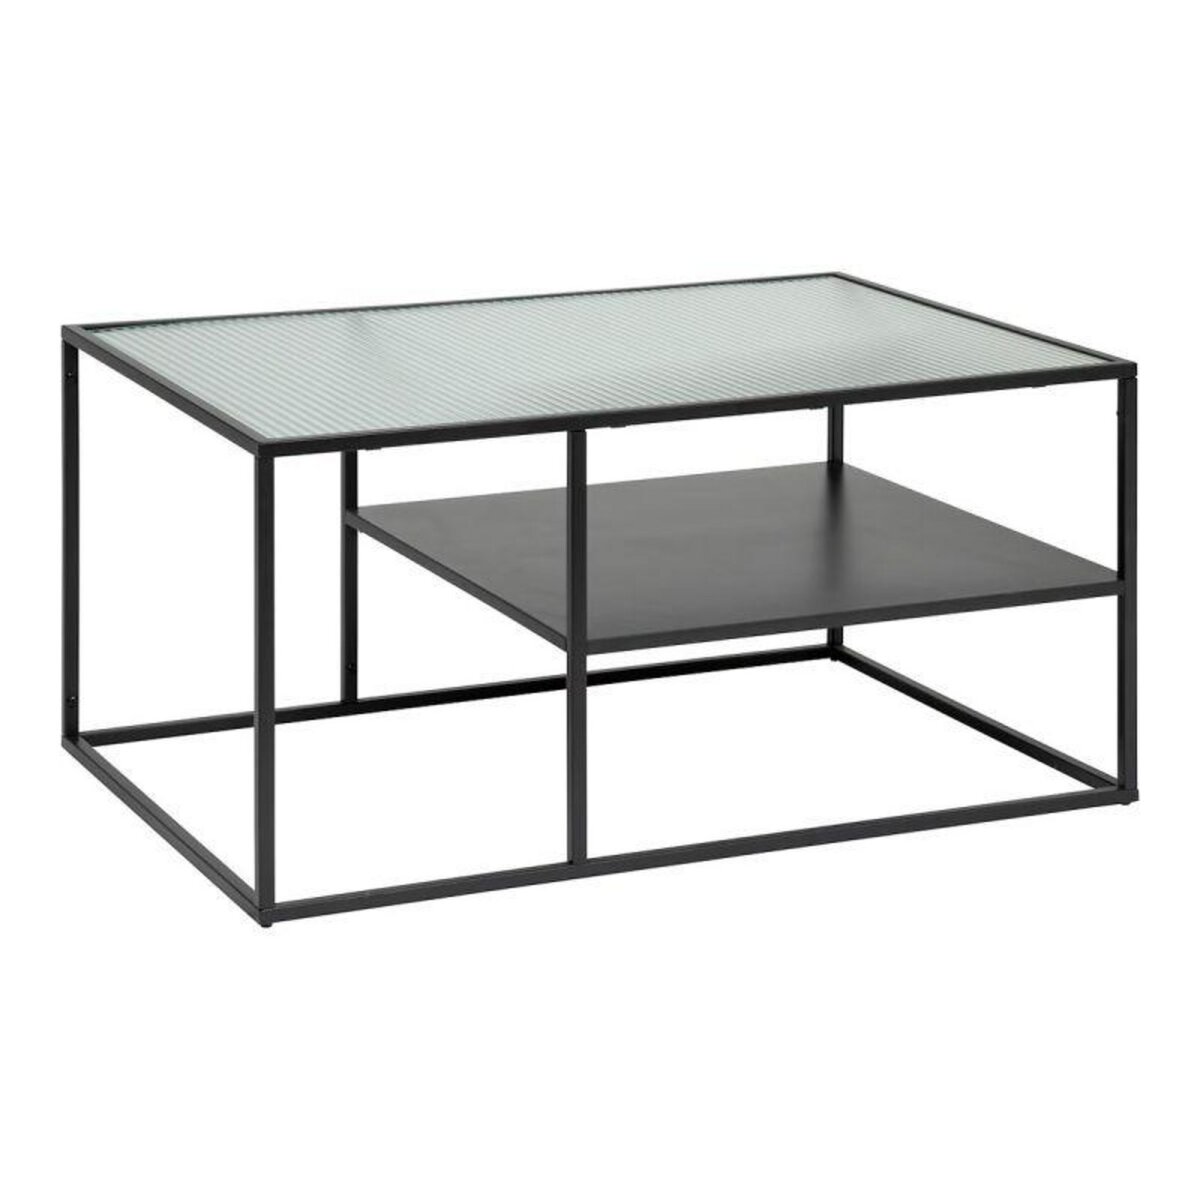  Table Basse Design  Aldir  90cm Noir